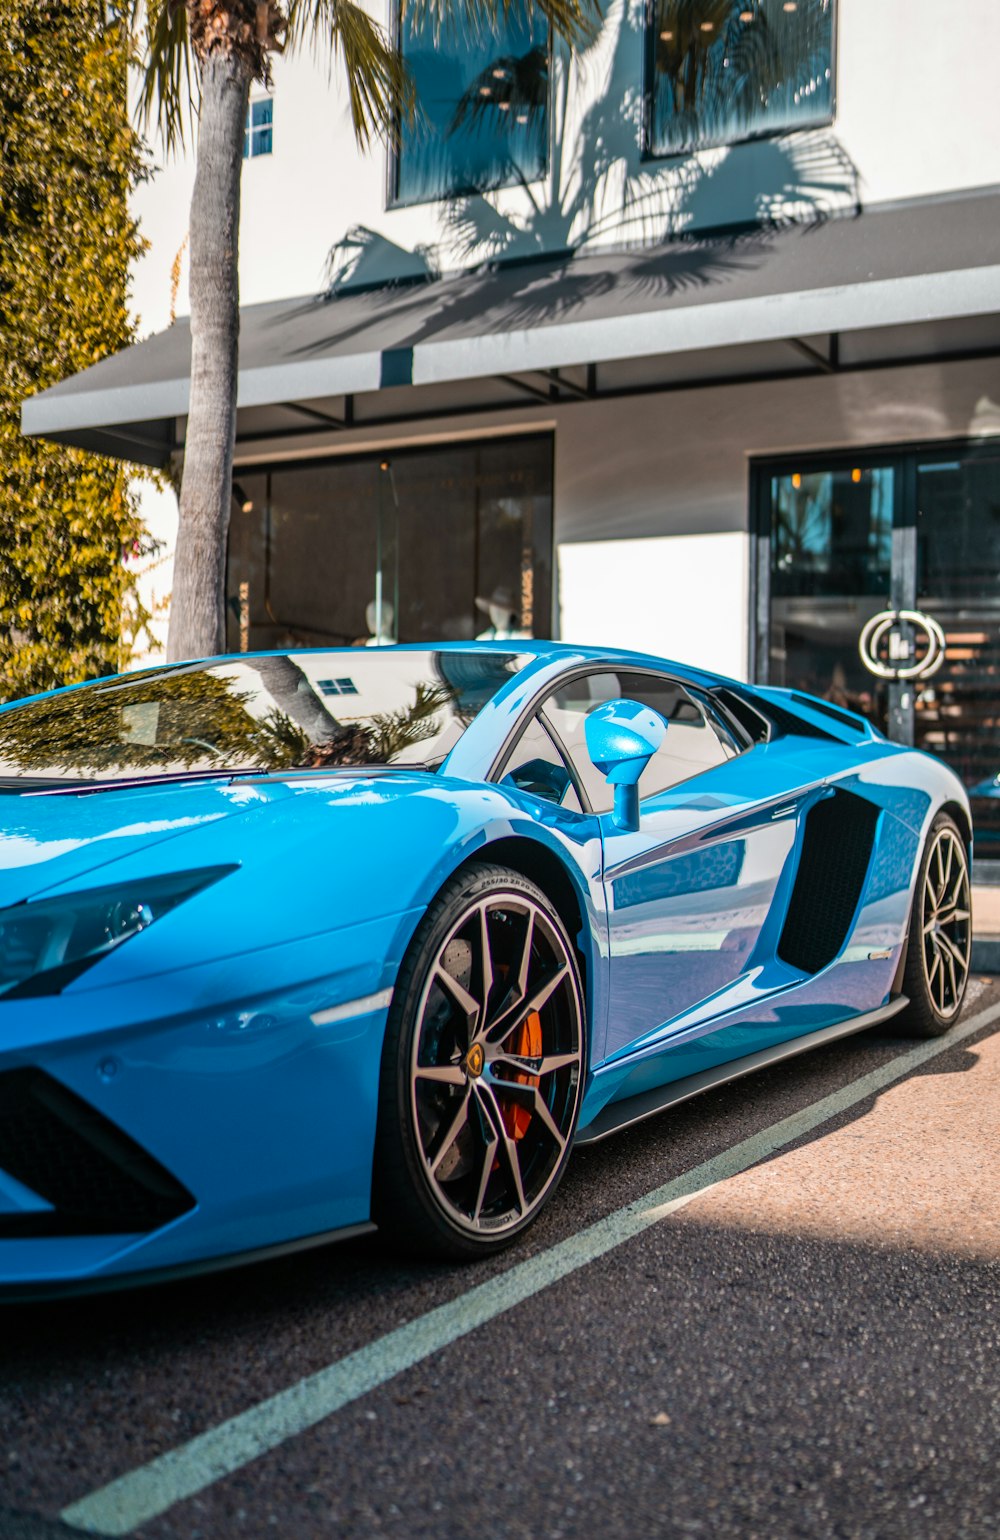 Lamborghini Aventador bleue garée près d’un bâtiment blanc pendant la journée